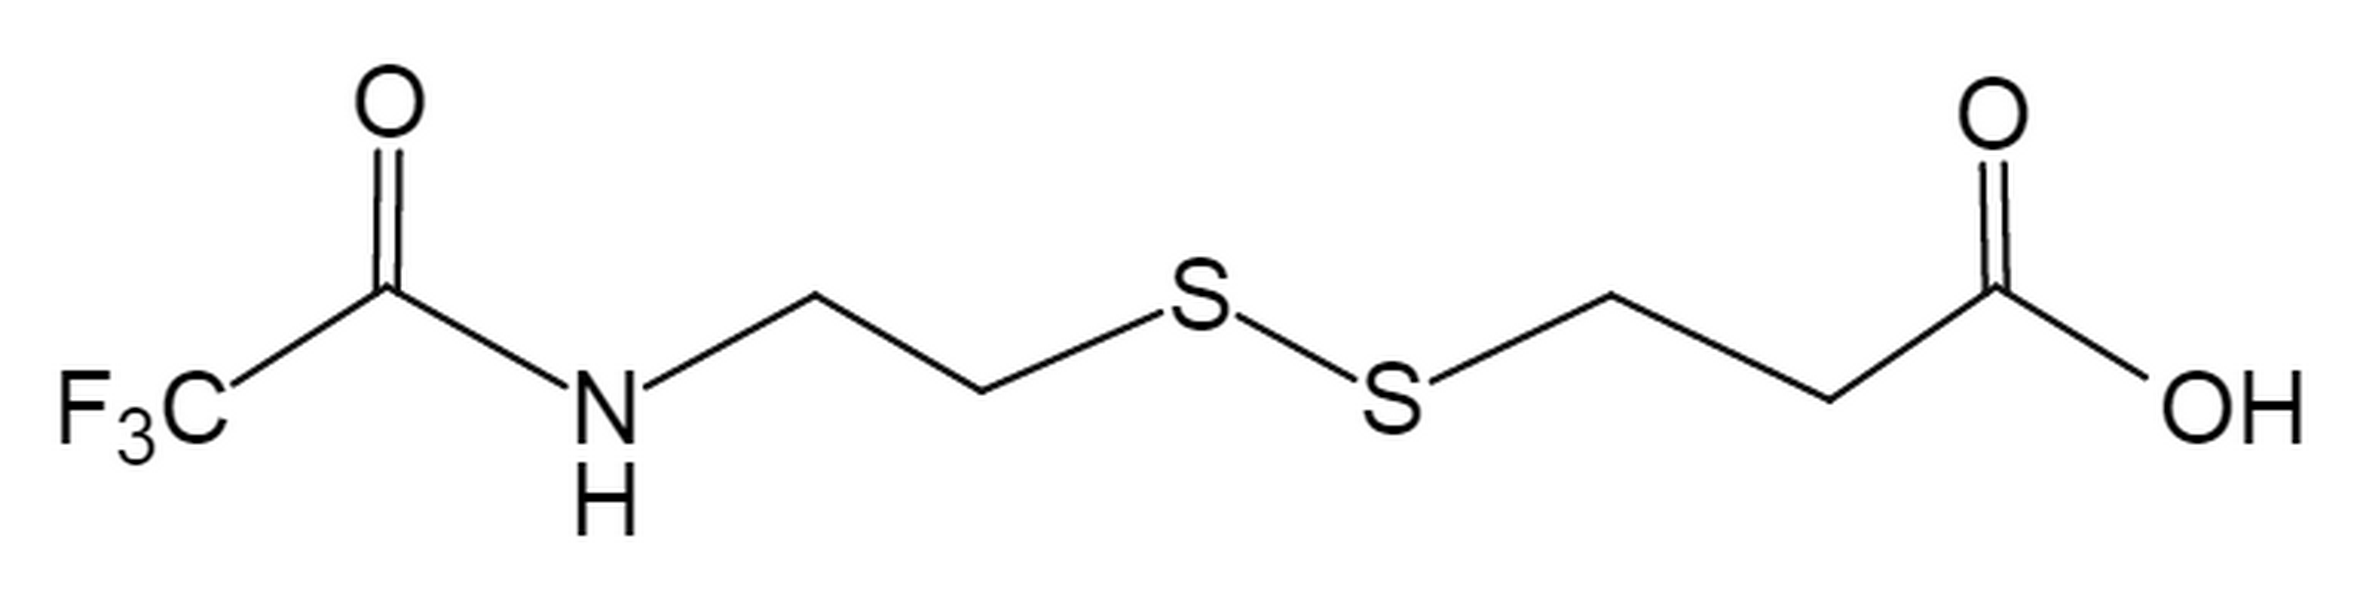 N-(2,2,2-Trifluoroacetyl)-3-[(2-aminoethyl)dithio]propanoic acid